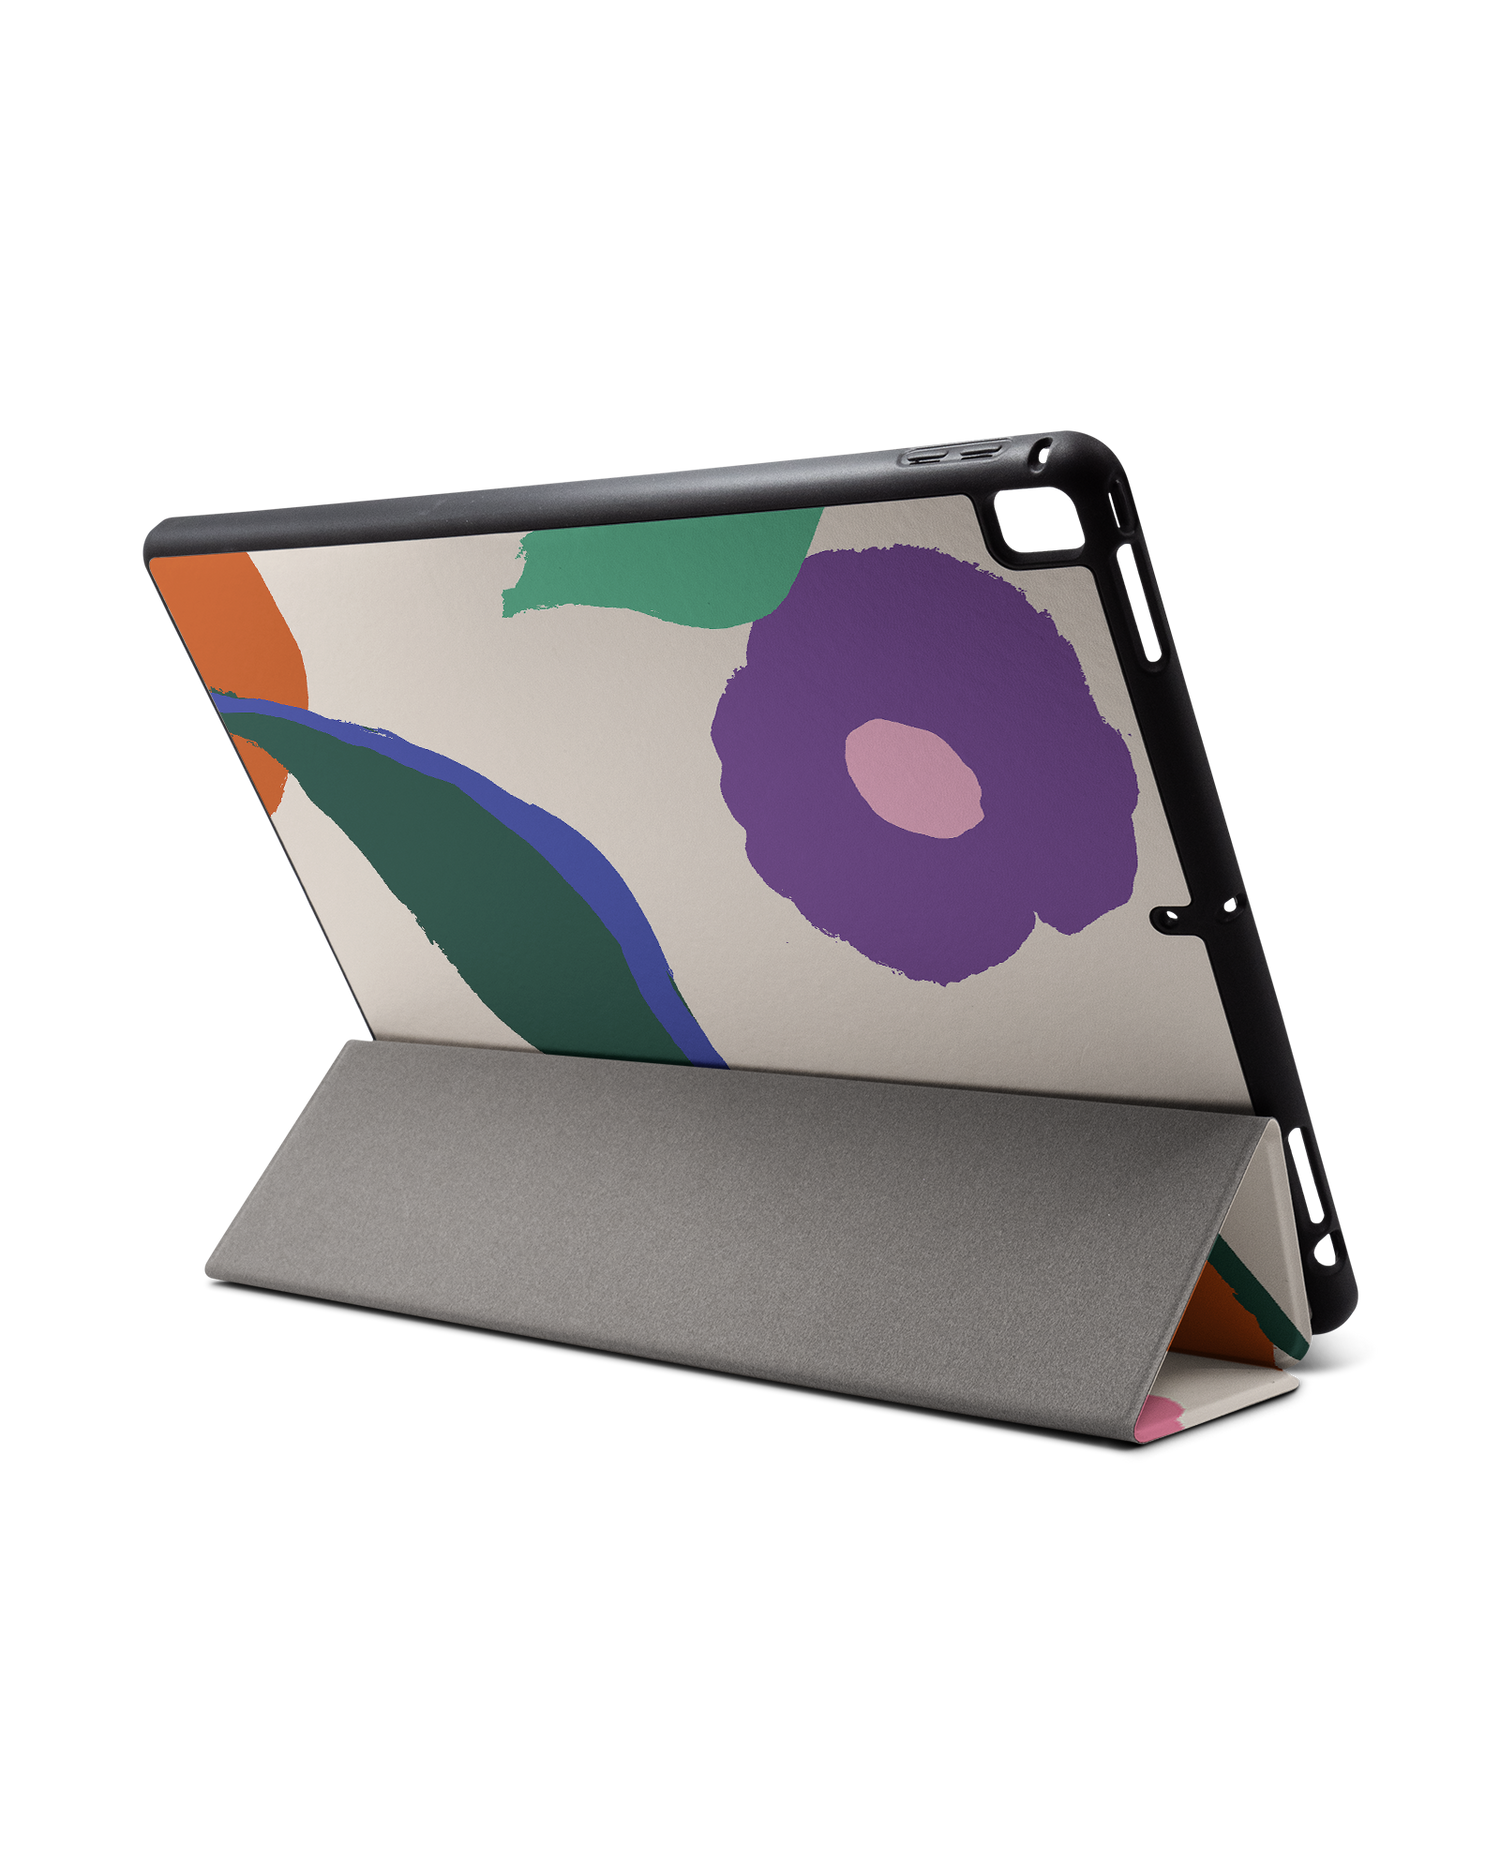 Handpainted Blooms iPad Hülle mit Stifthalter für Apple iPad Pro 2 12.9'' (2017): Aufgestellt im Querformat von hinten